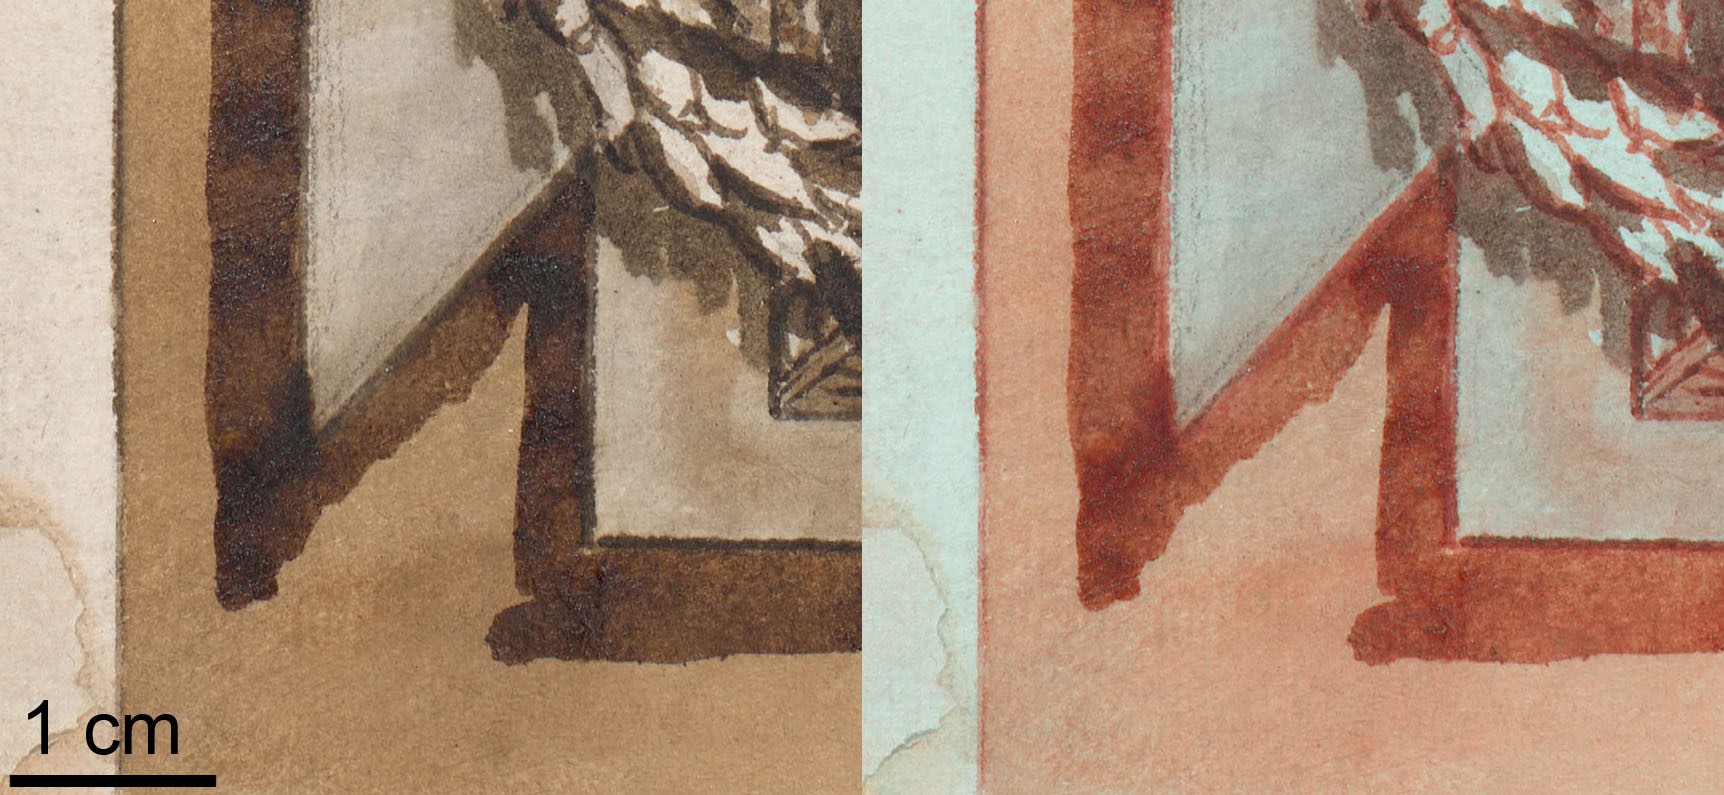 Vergleich zweier Detailaufnahmen der Piranesi-Zeichnung.